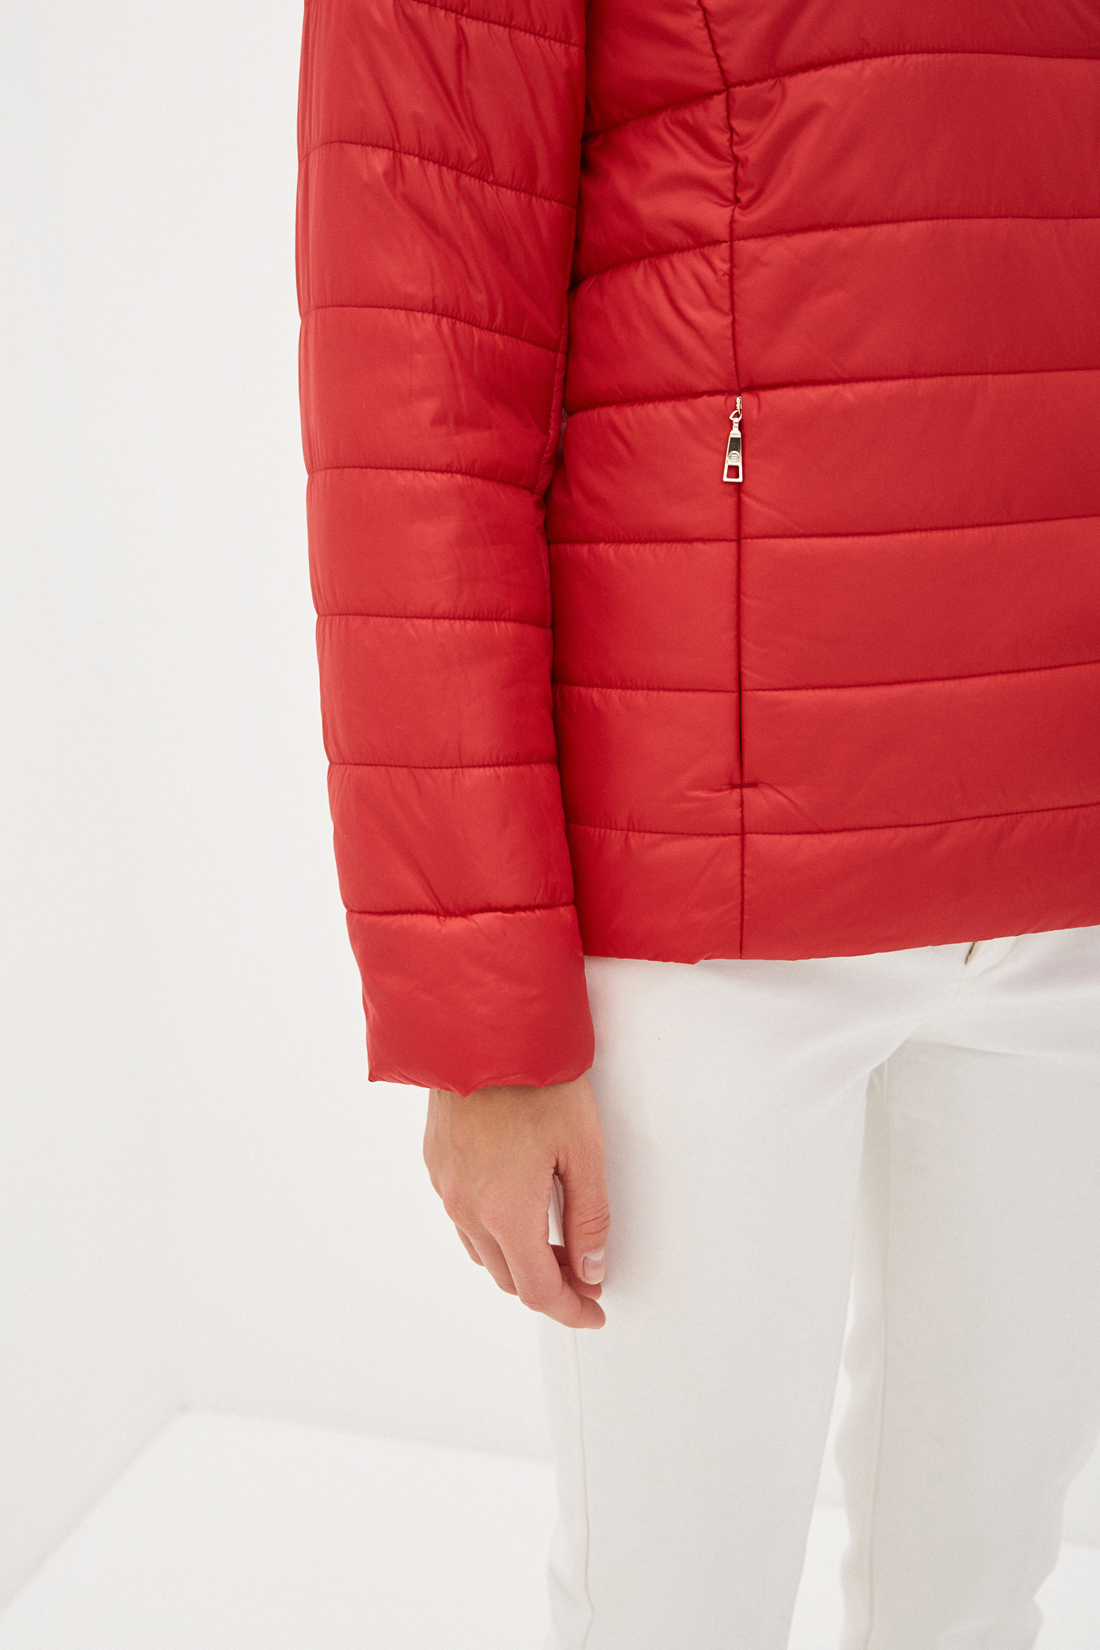 Куртка с воротником (арт. baon B030002), размер XXL, цвет красный Куртка с воротником (арт. baon B030002) - фото 3